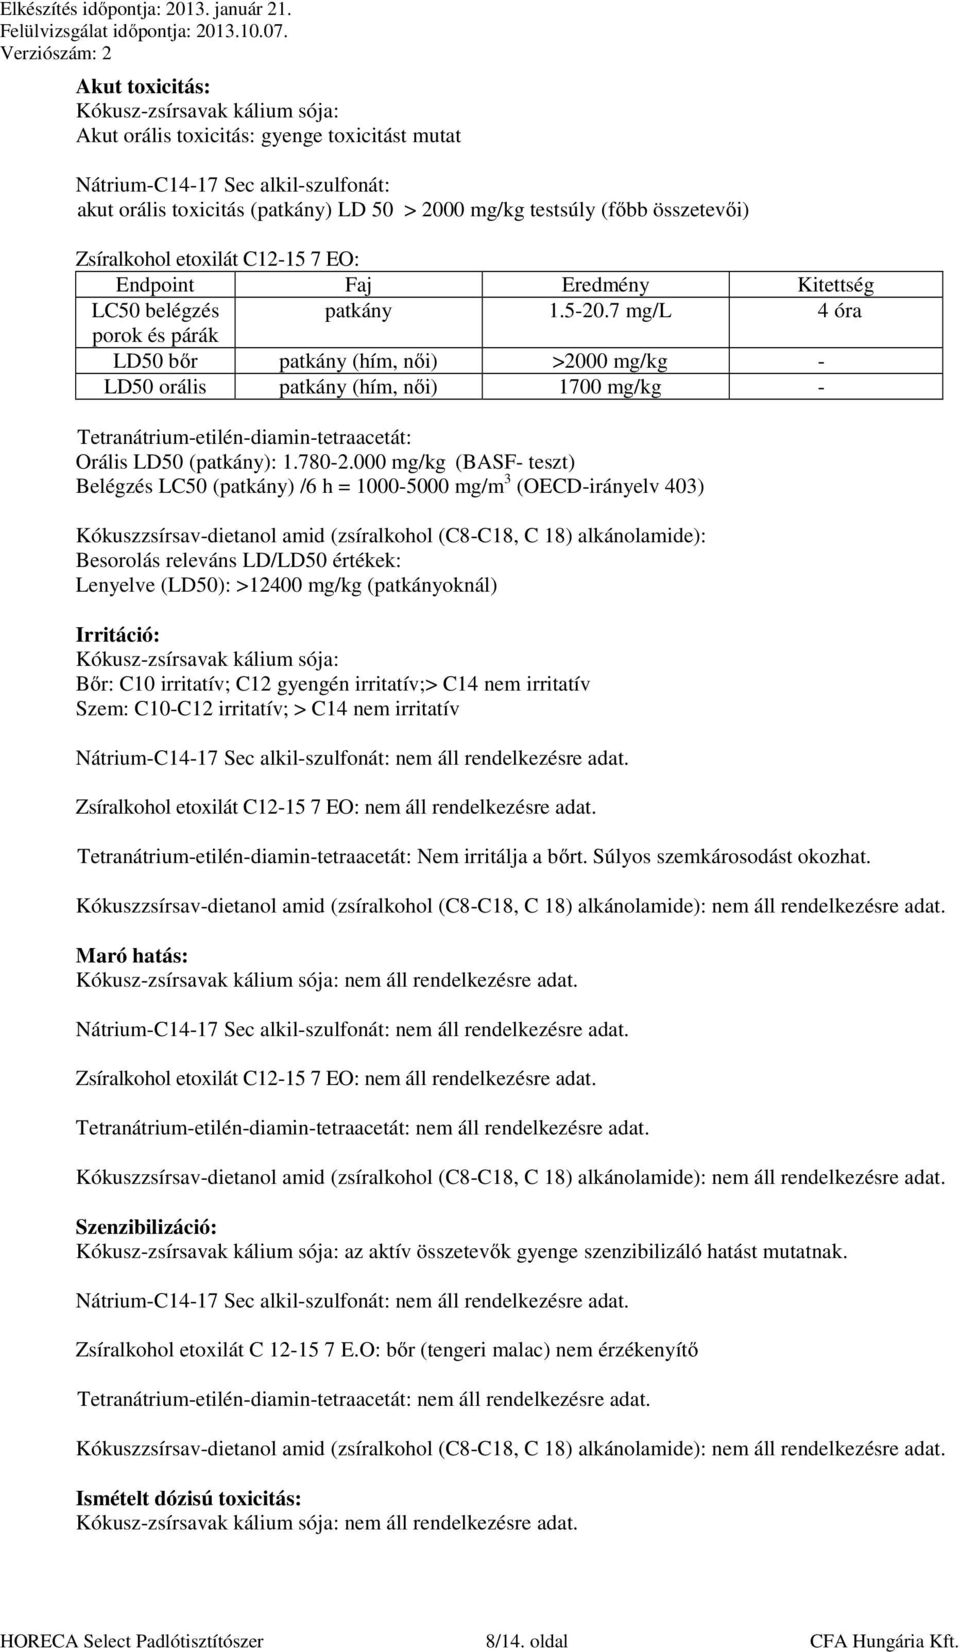 BIZTONSÁGI ADATLAP 453/2010/EU rendelet szerint - PDF Free Download